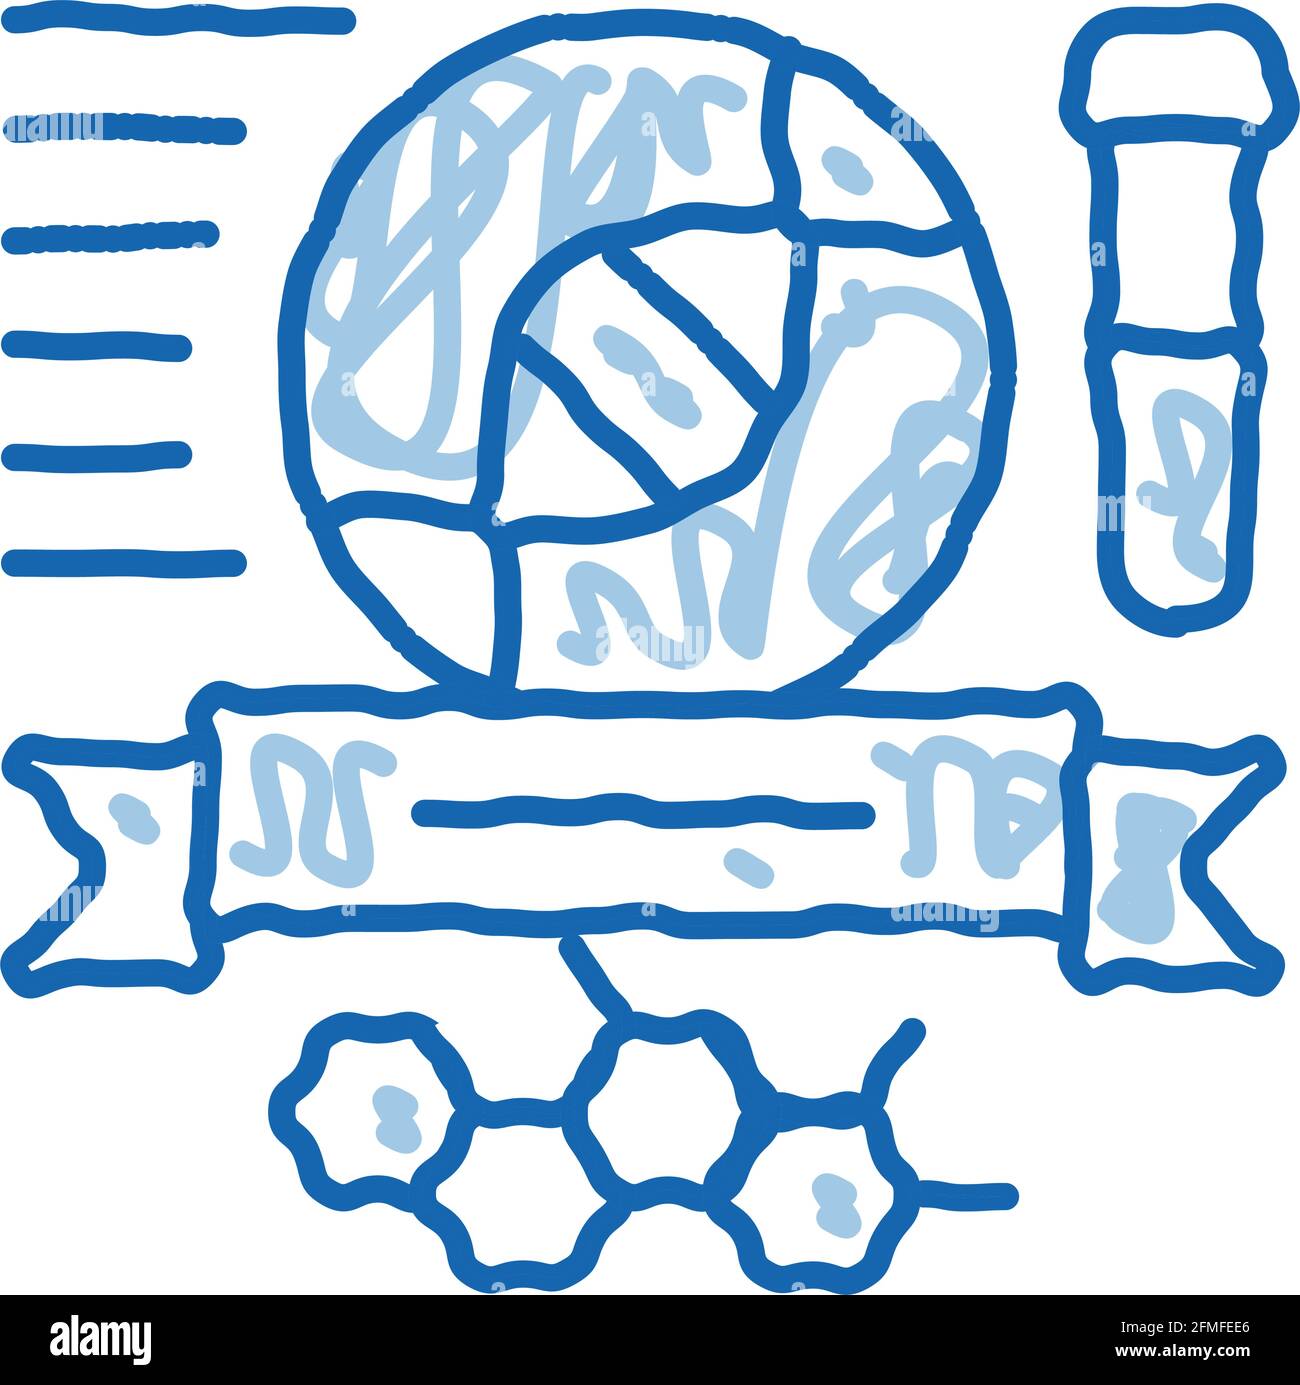 Chemie Fächer Graduation Doodle Icon Handgezeichnete Illustration Stock Vektor